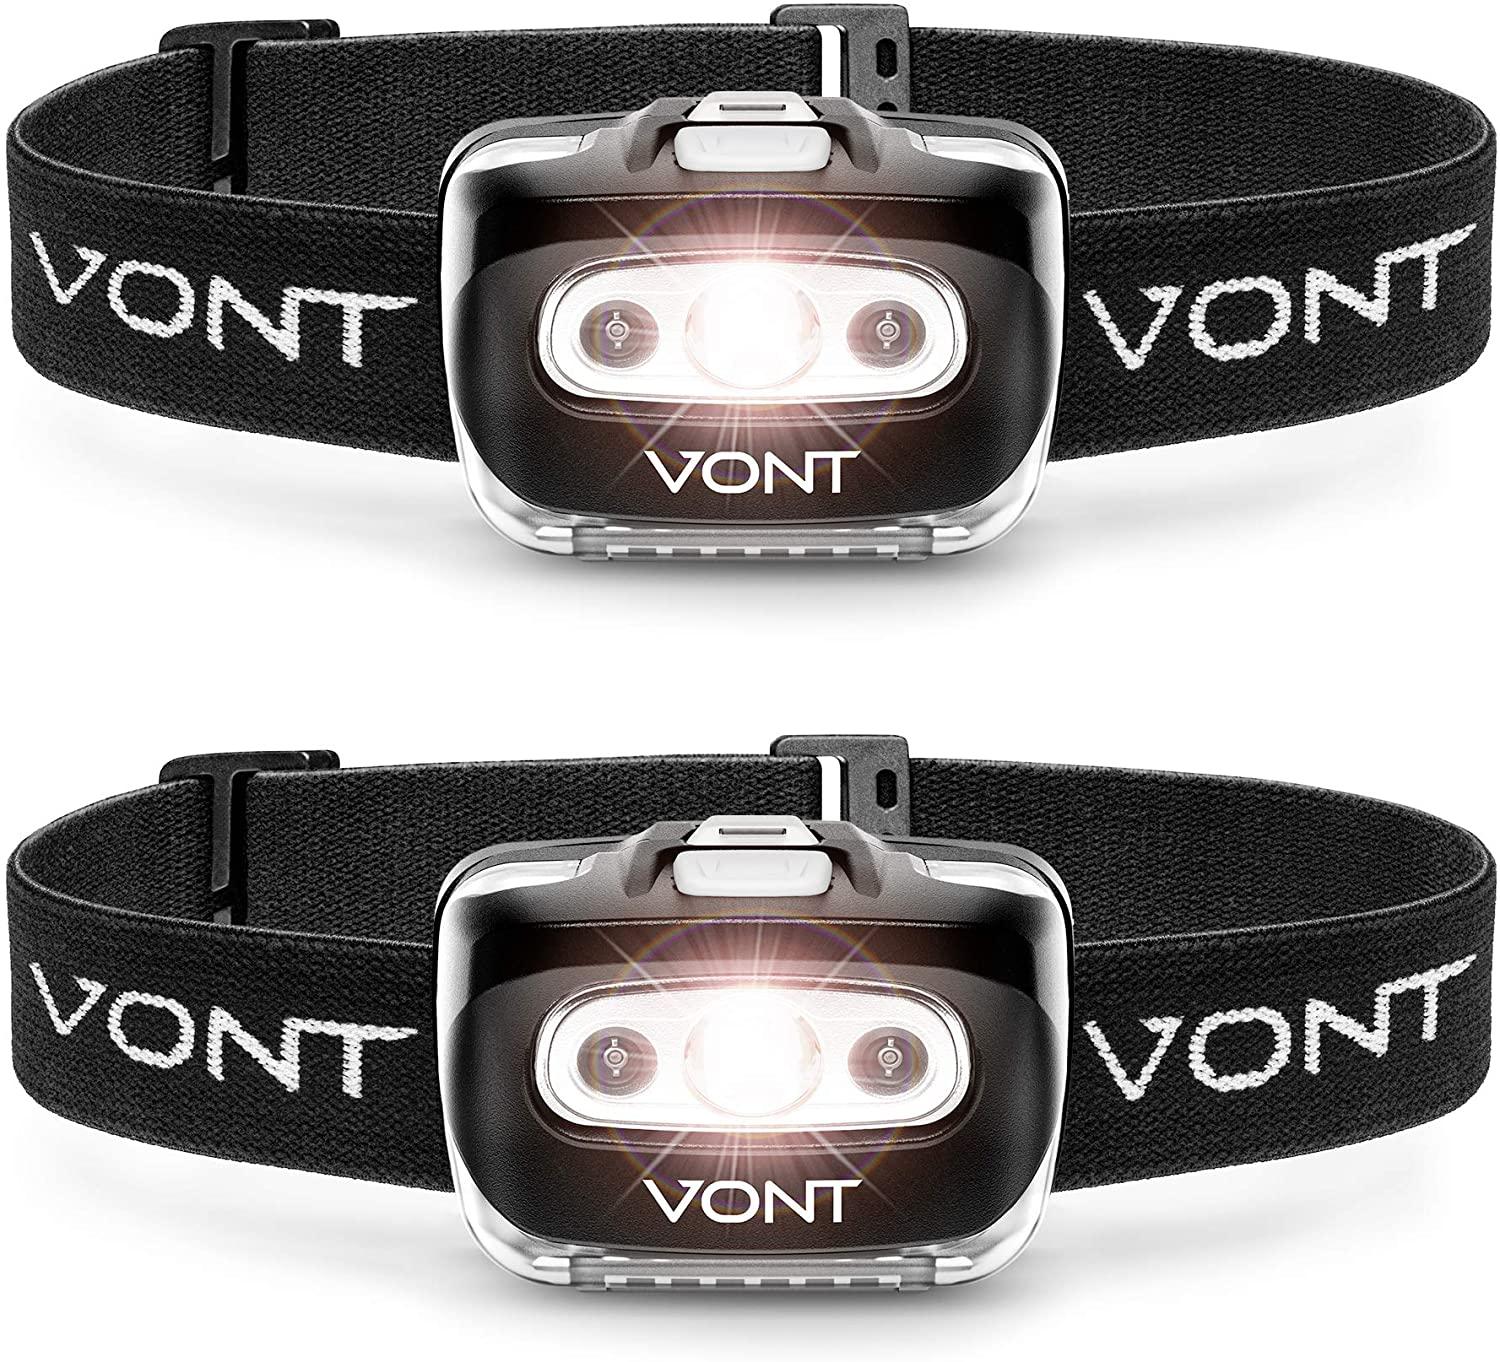 2 Vont Spark LED Headlamp Flashlight for $6.71 Shipped